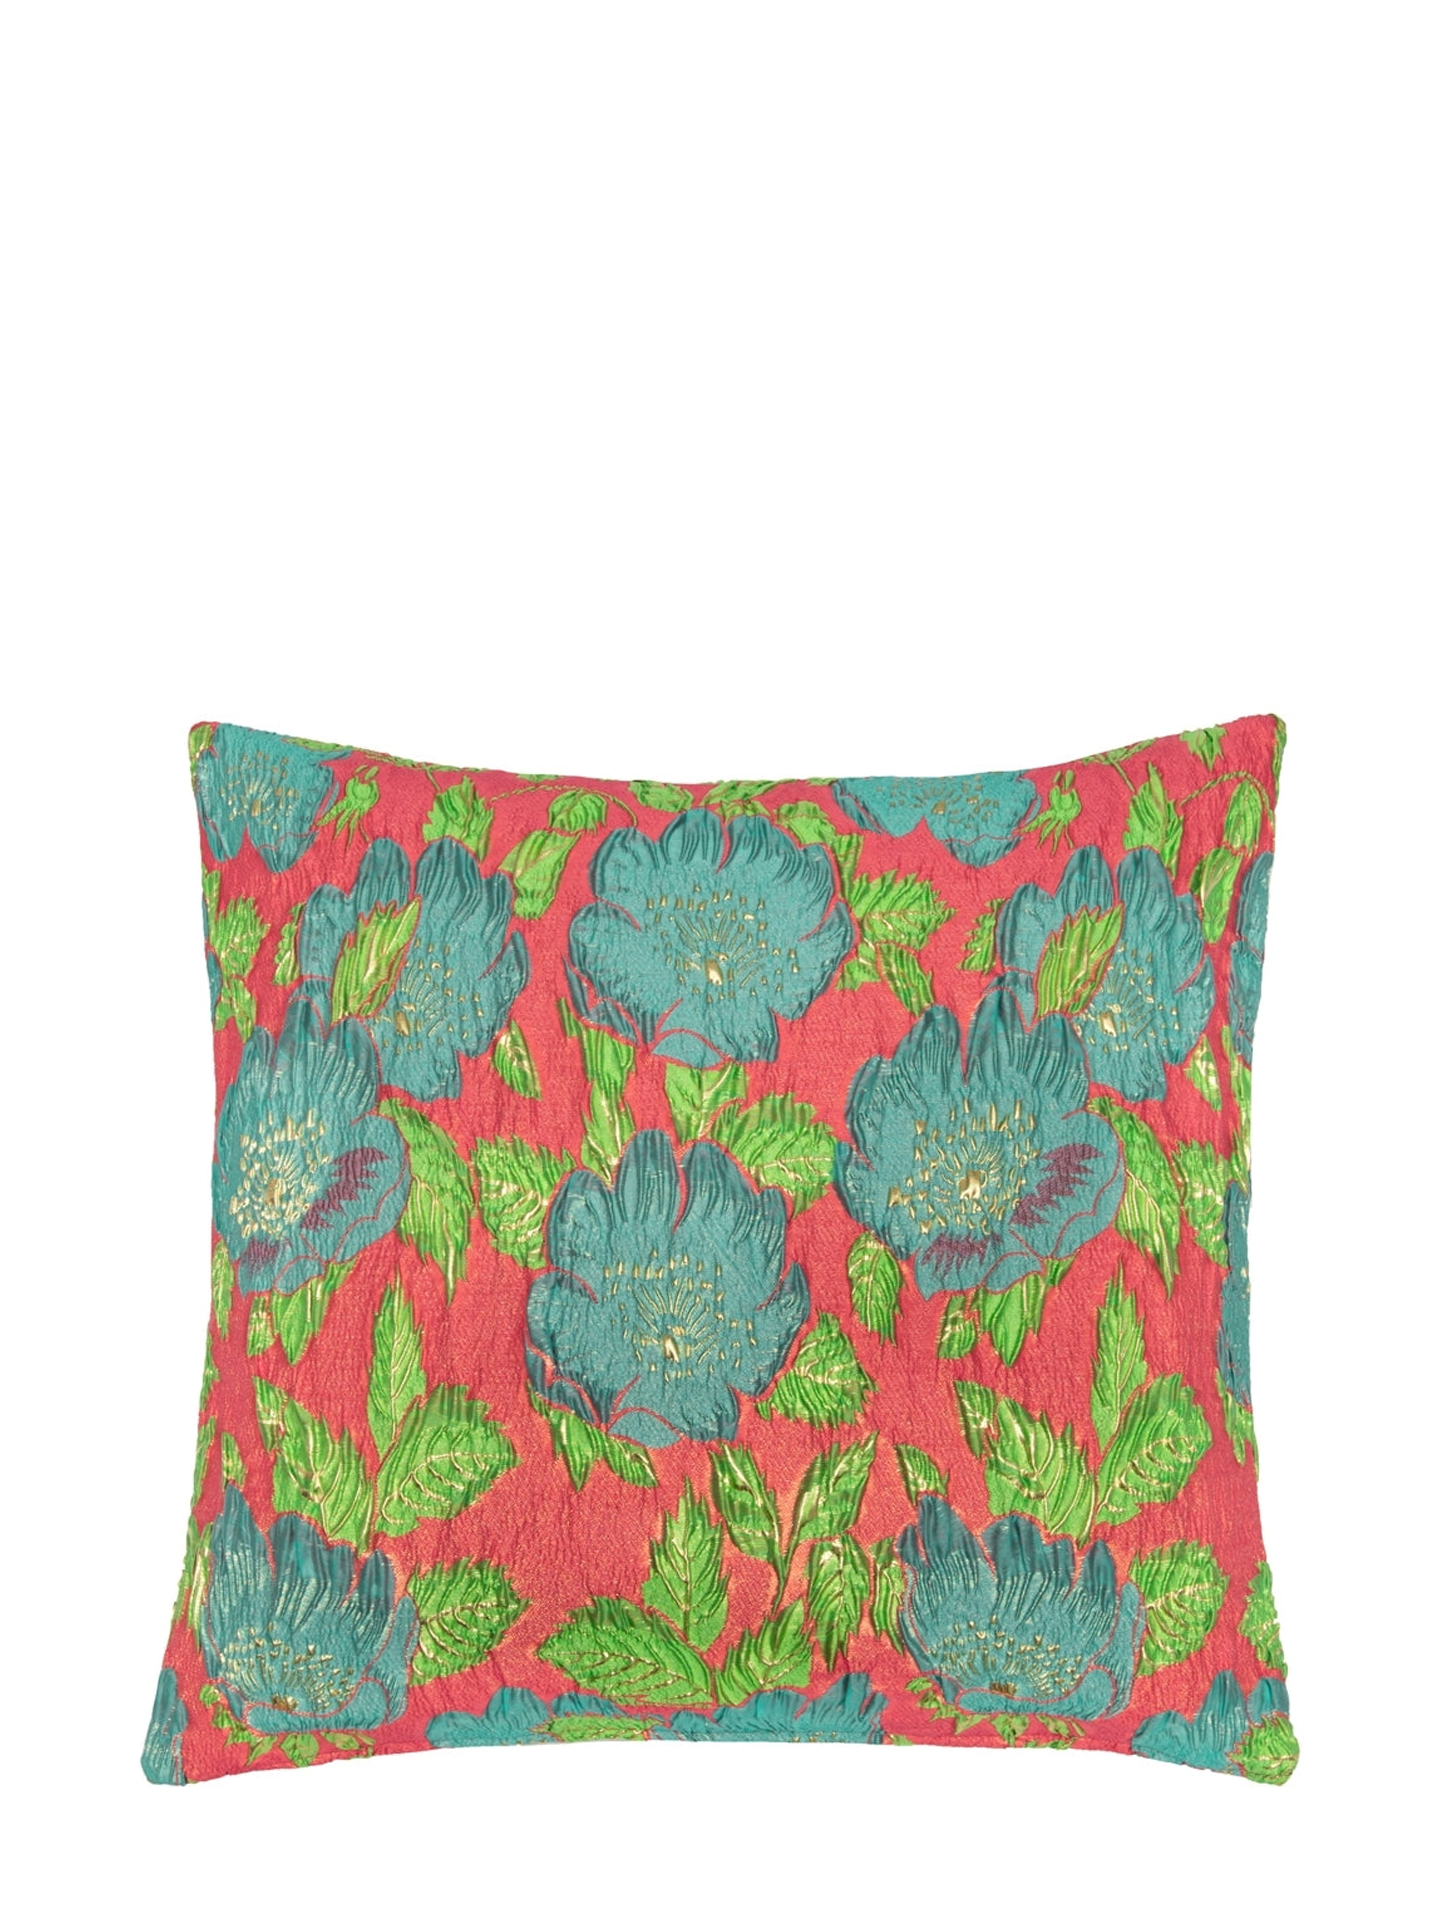 Aqua, teal, green & coral floral cushion